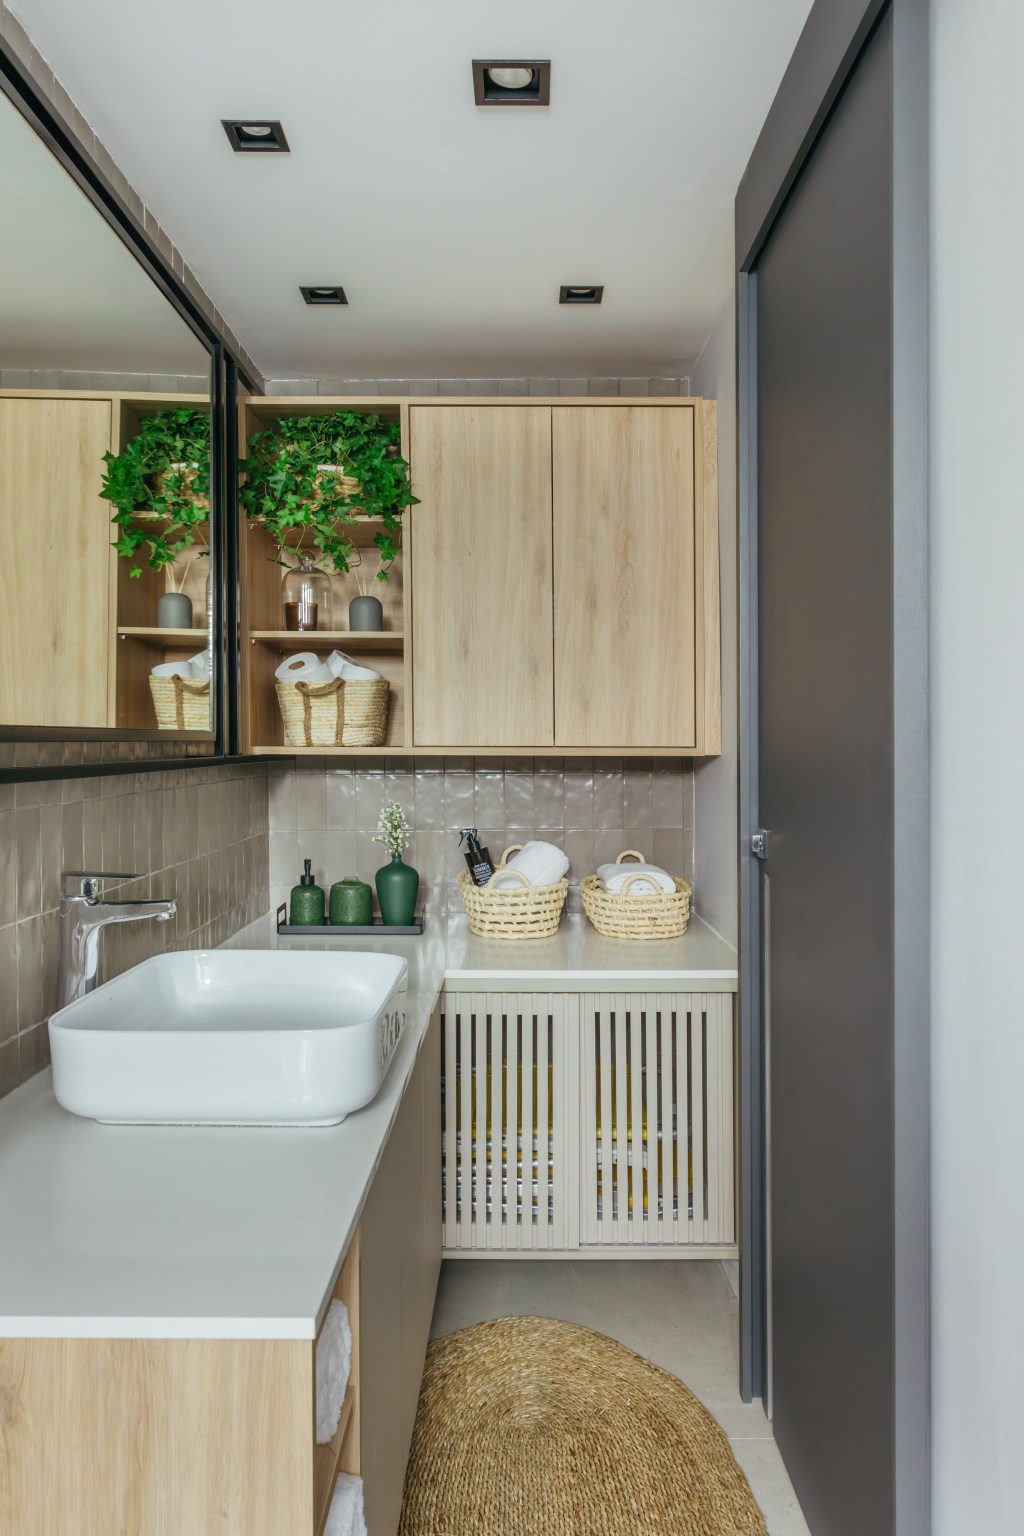 Cozinha se esconde dentro do armário neste apê de 35 m², Projeto de Ikeda Arquitetura. Na foto, banheiro com marcenaria clara e espelho de serralheria.